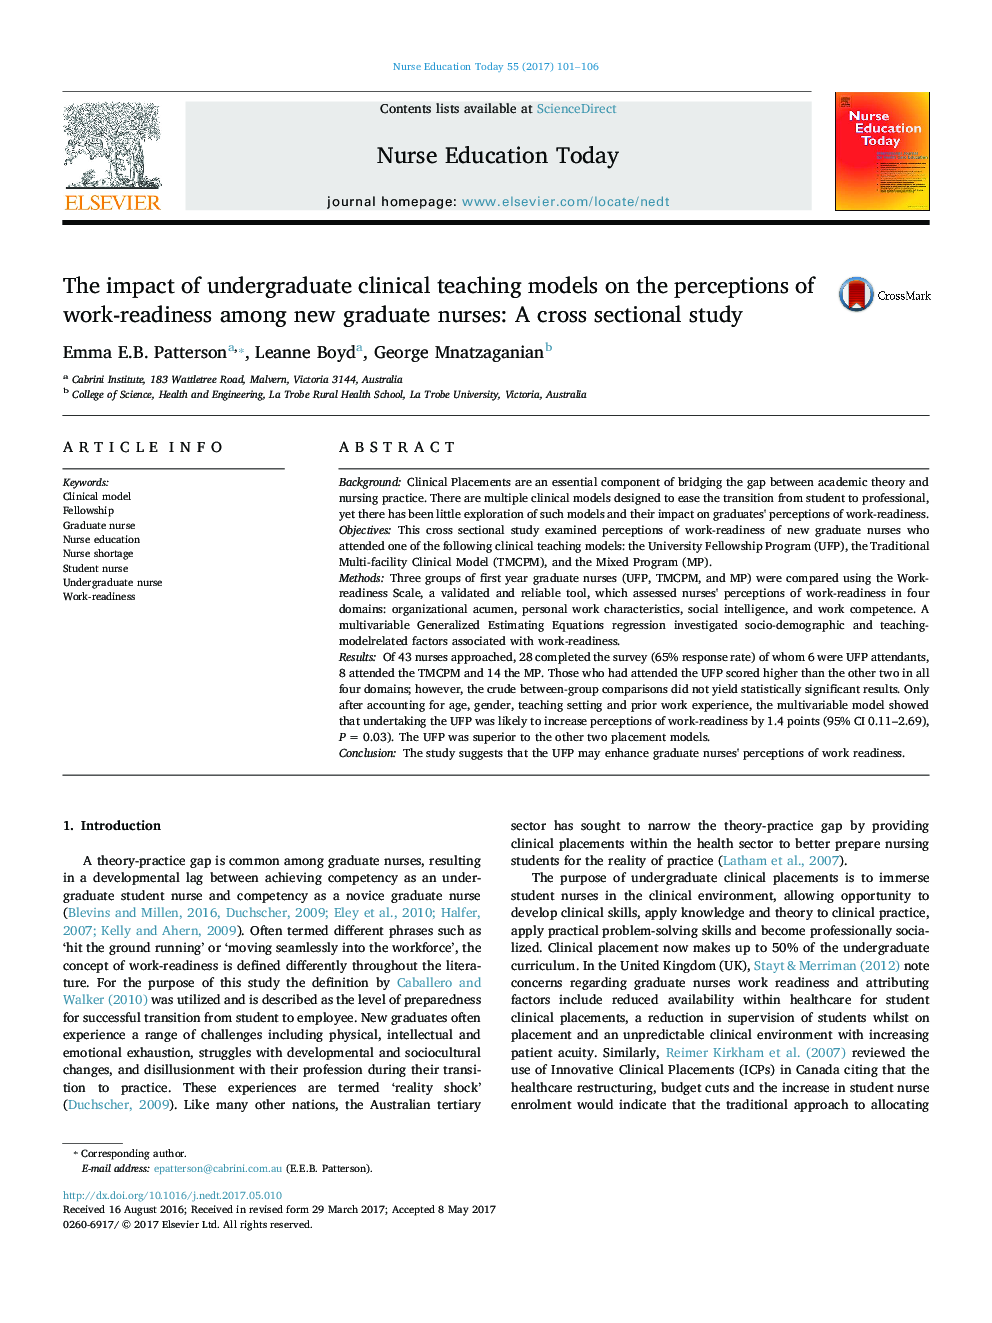 تأثیر مدلهای آموزش بالینی کارشناسی بر روی درک آمادگی کار در پرستاران جدید فارغ التحصیل: یک مطالعه مقطعی 